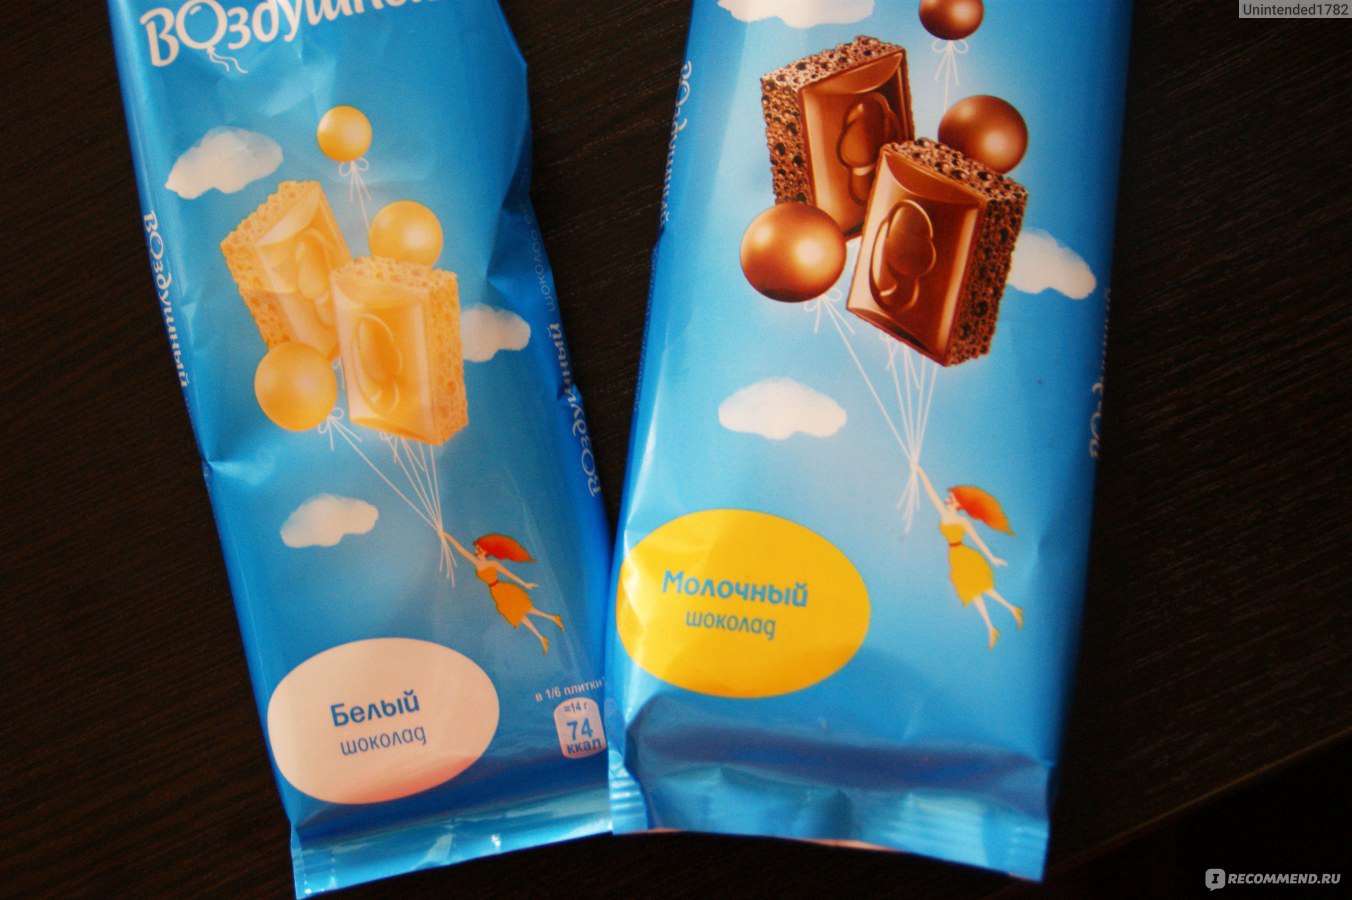 Mondelez воздушный шоколад